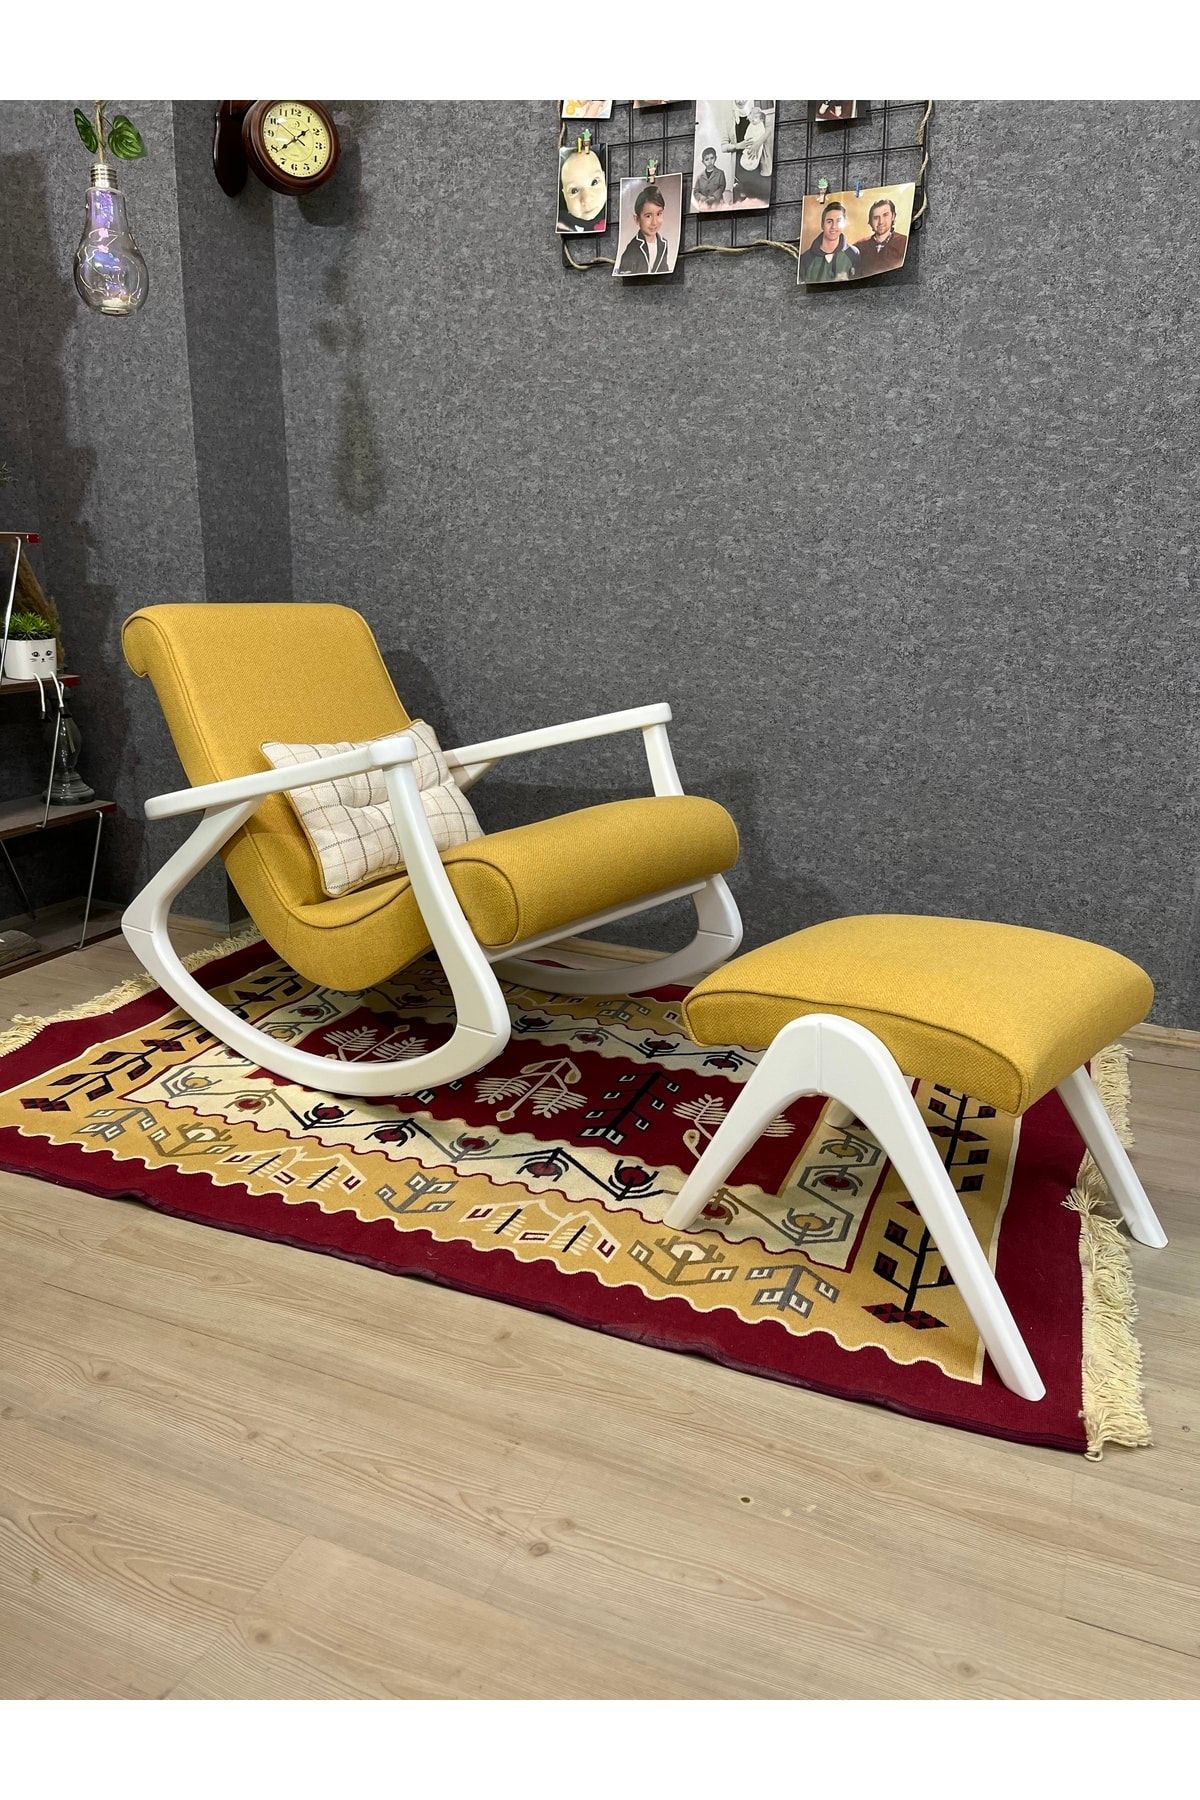 Asedia Ekol Lake Sarı Sallanan Sandalye Modern Dinlenme Emzirme Baba Tv Okuma Koltuğu Anneler Günü Hediyesi